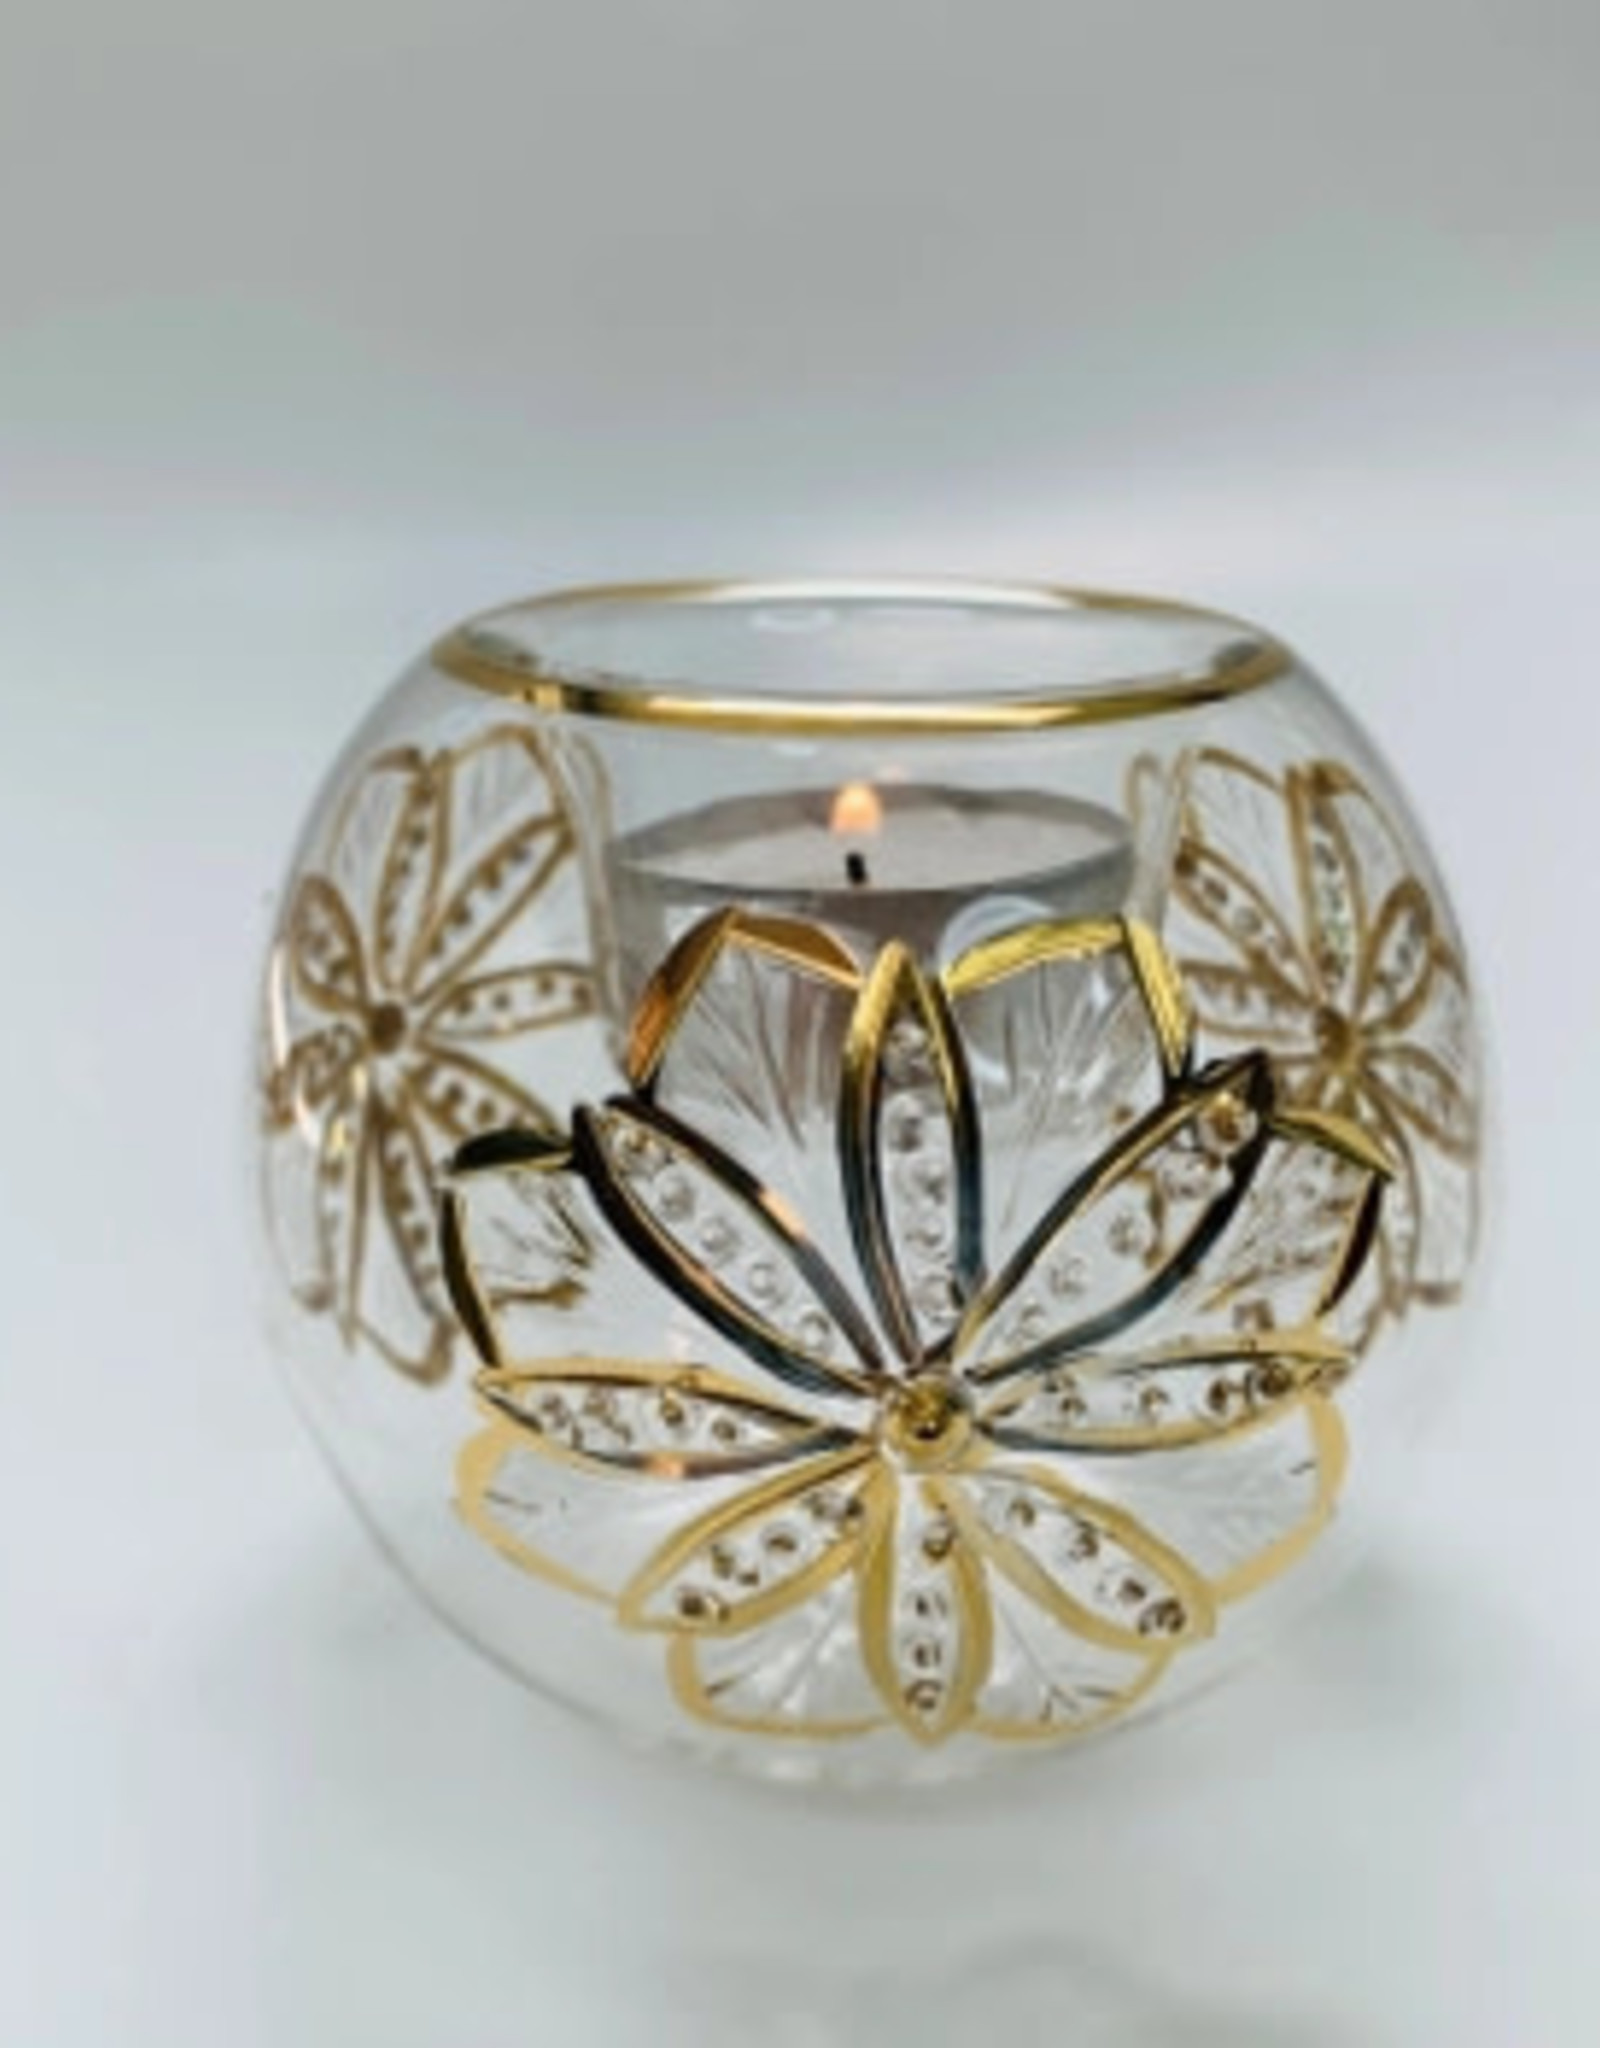 Dandarah Blown Glass Candle Holder - Gold Flower